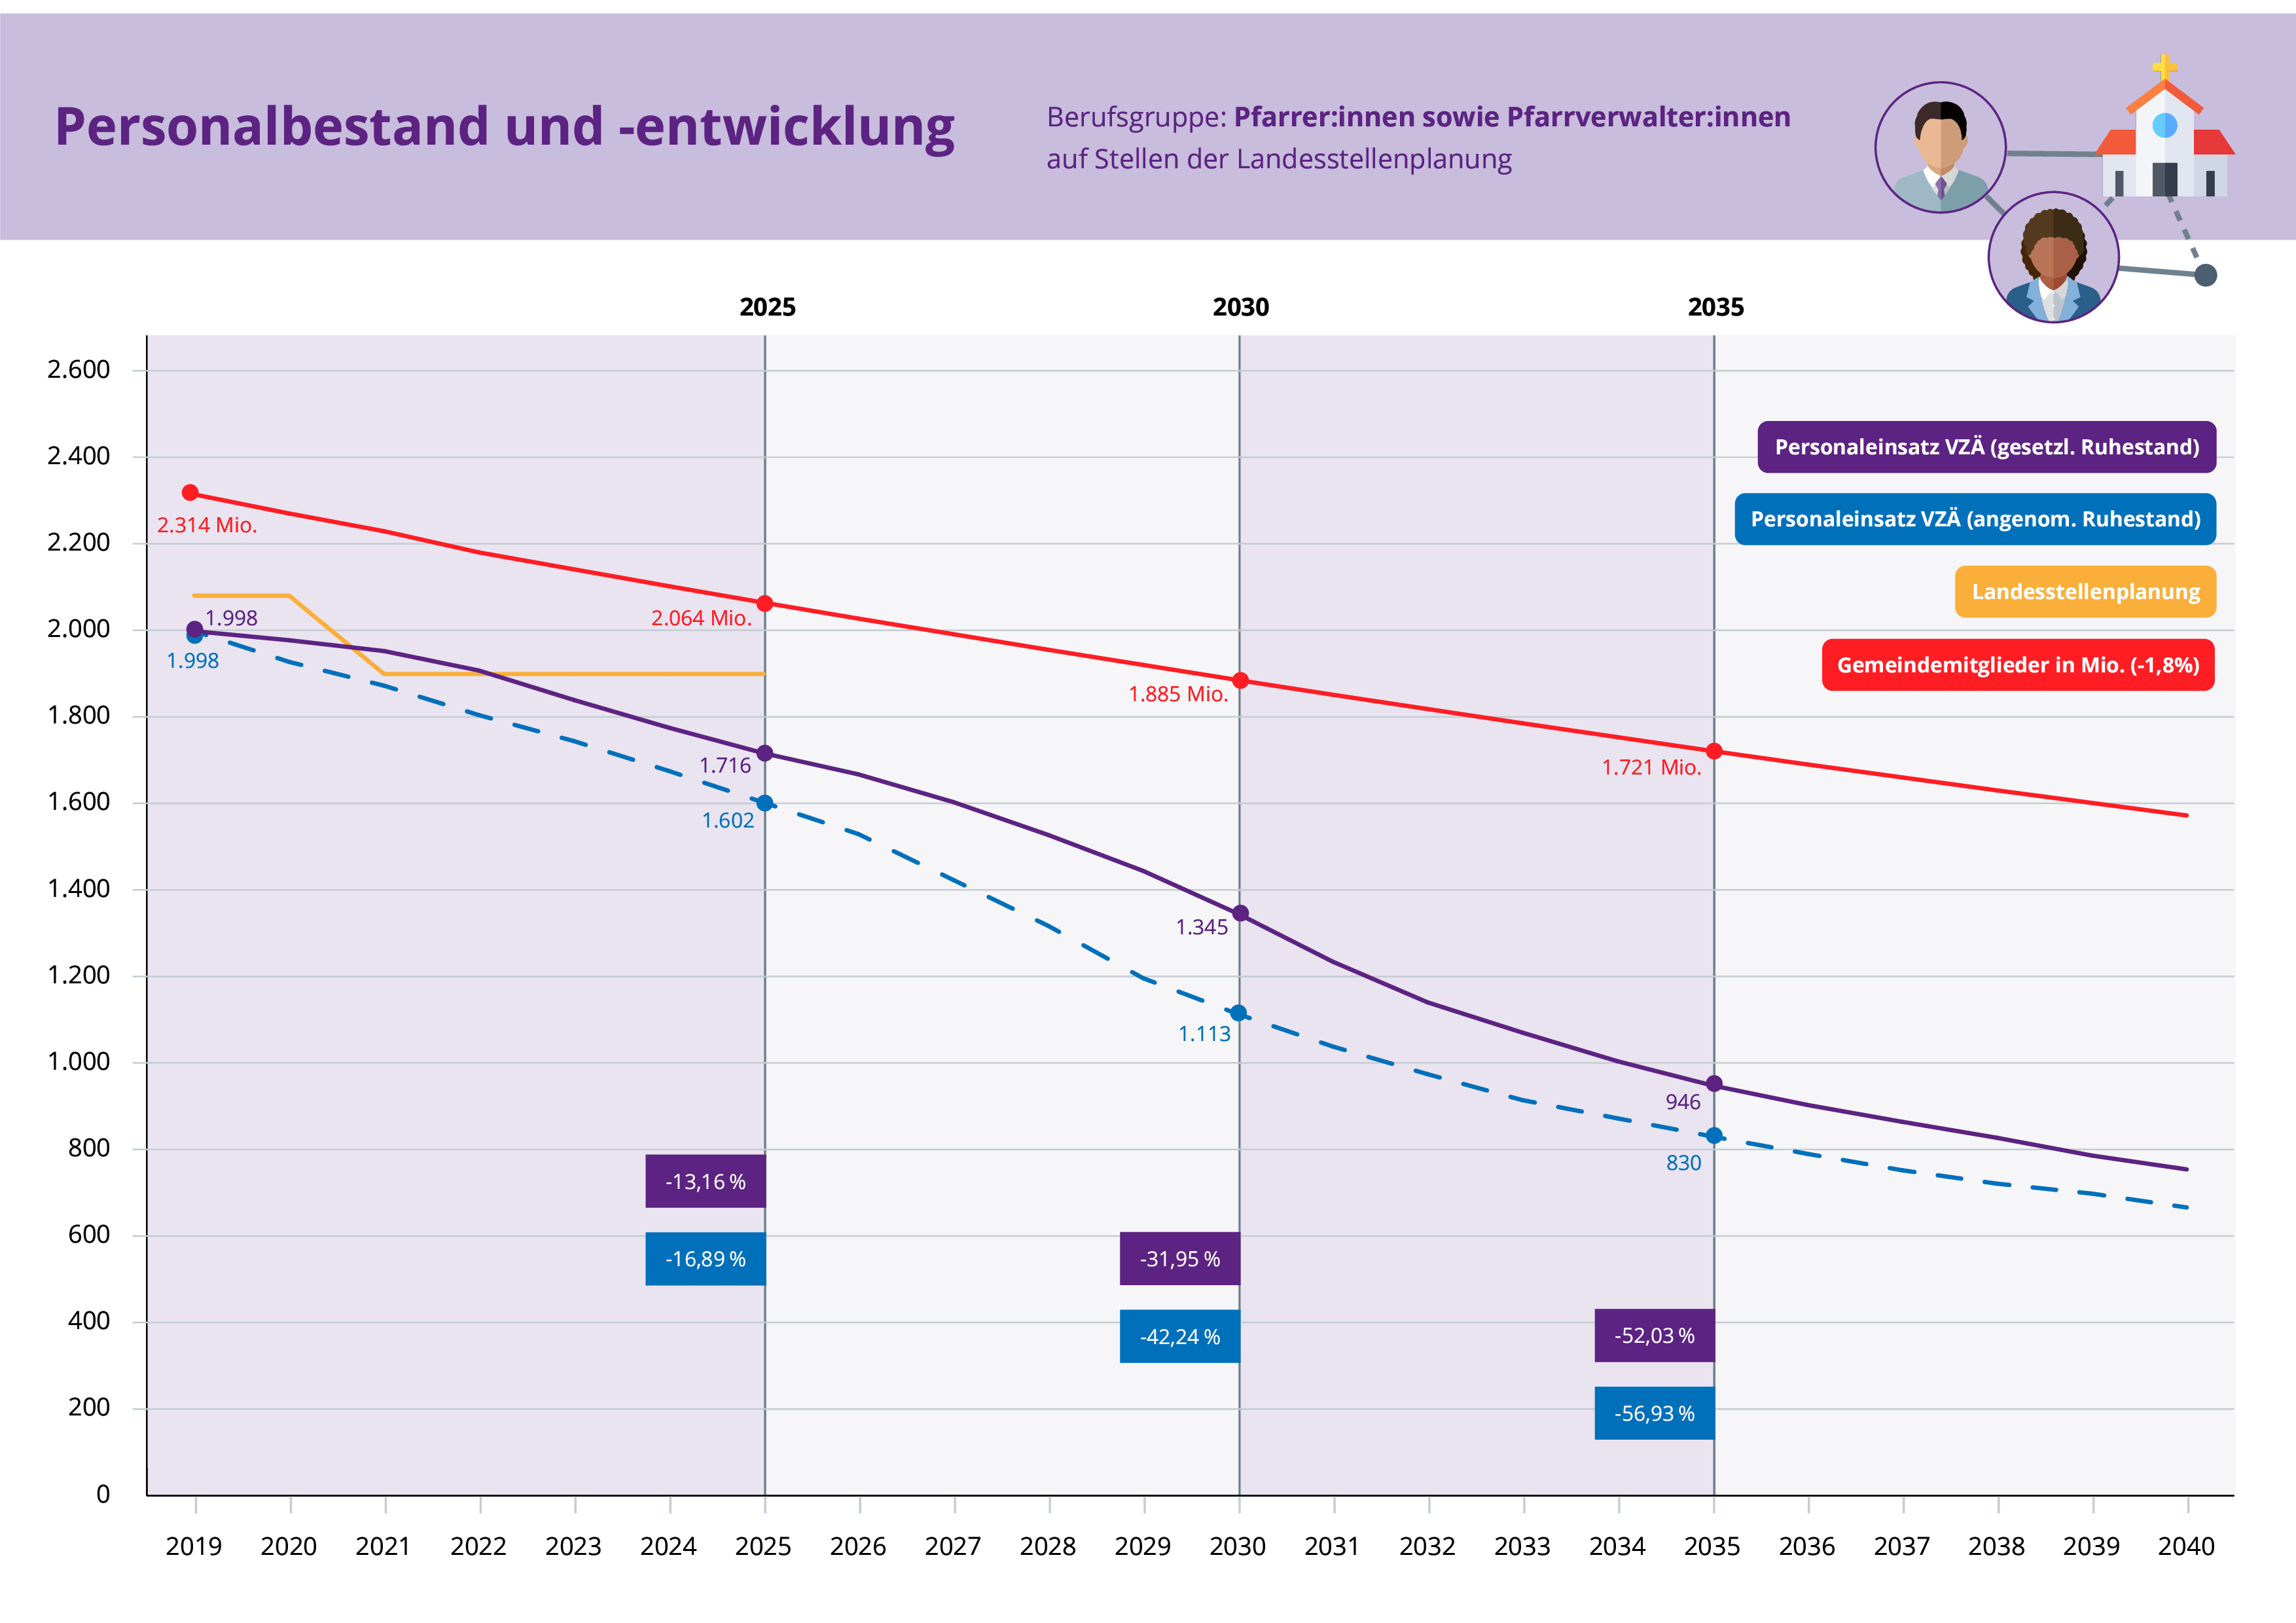 Grafik Personalentwicklung PfarrerInnen in Bayern bis 2035